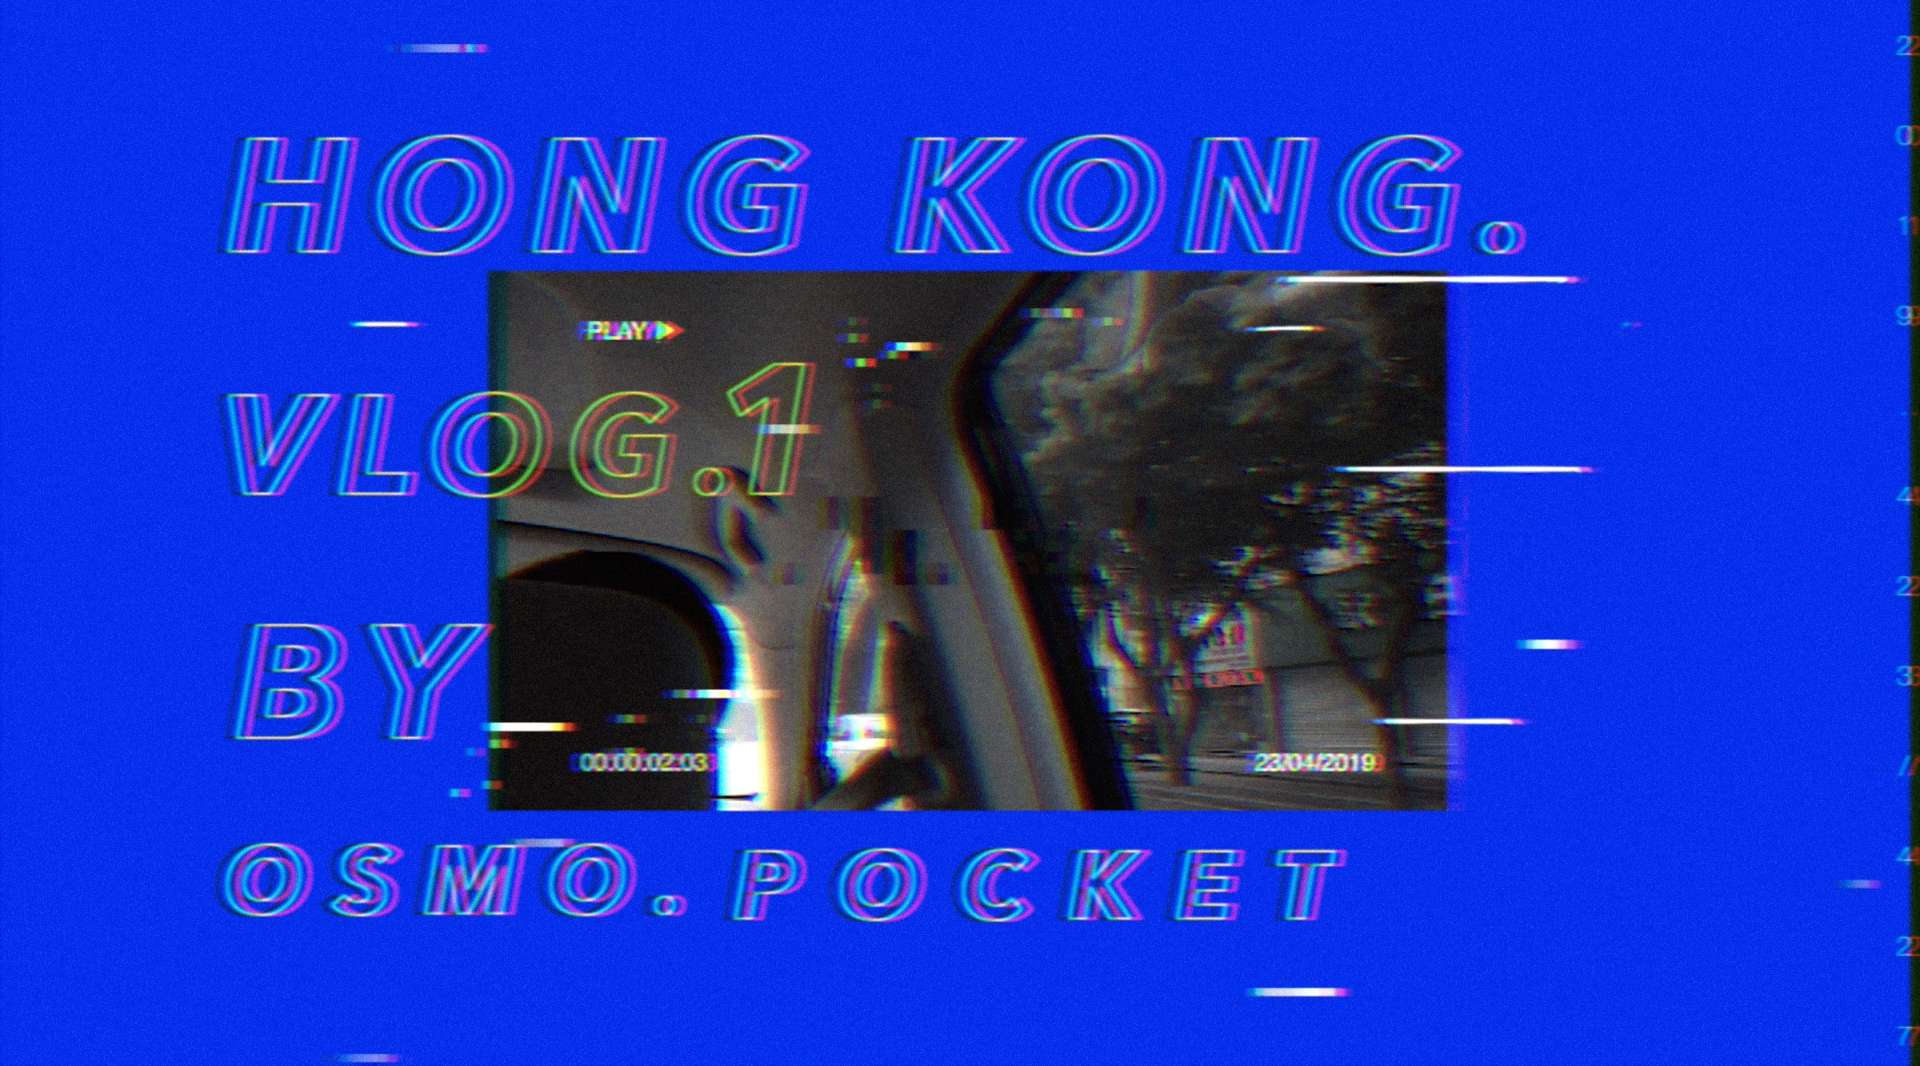 【Vlog】|HongKong| OSMO POCKET拍摄